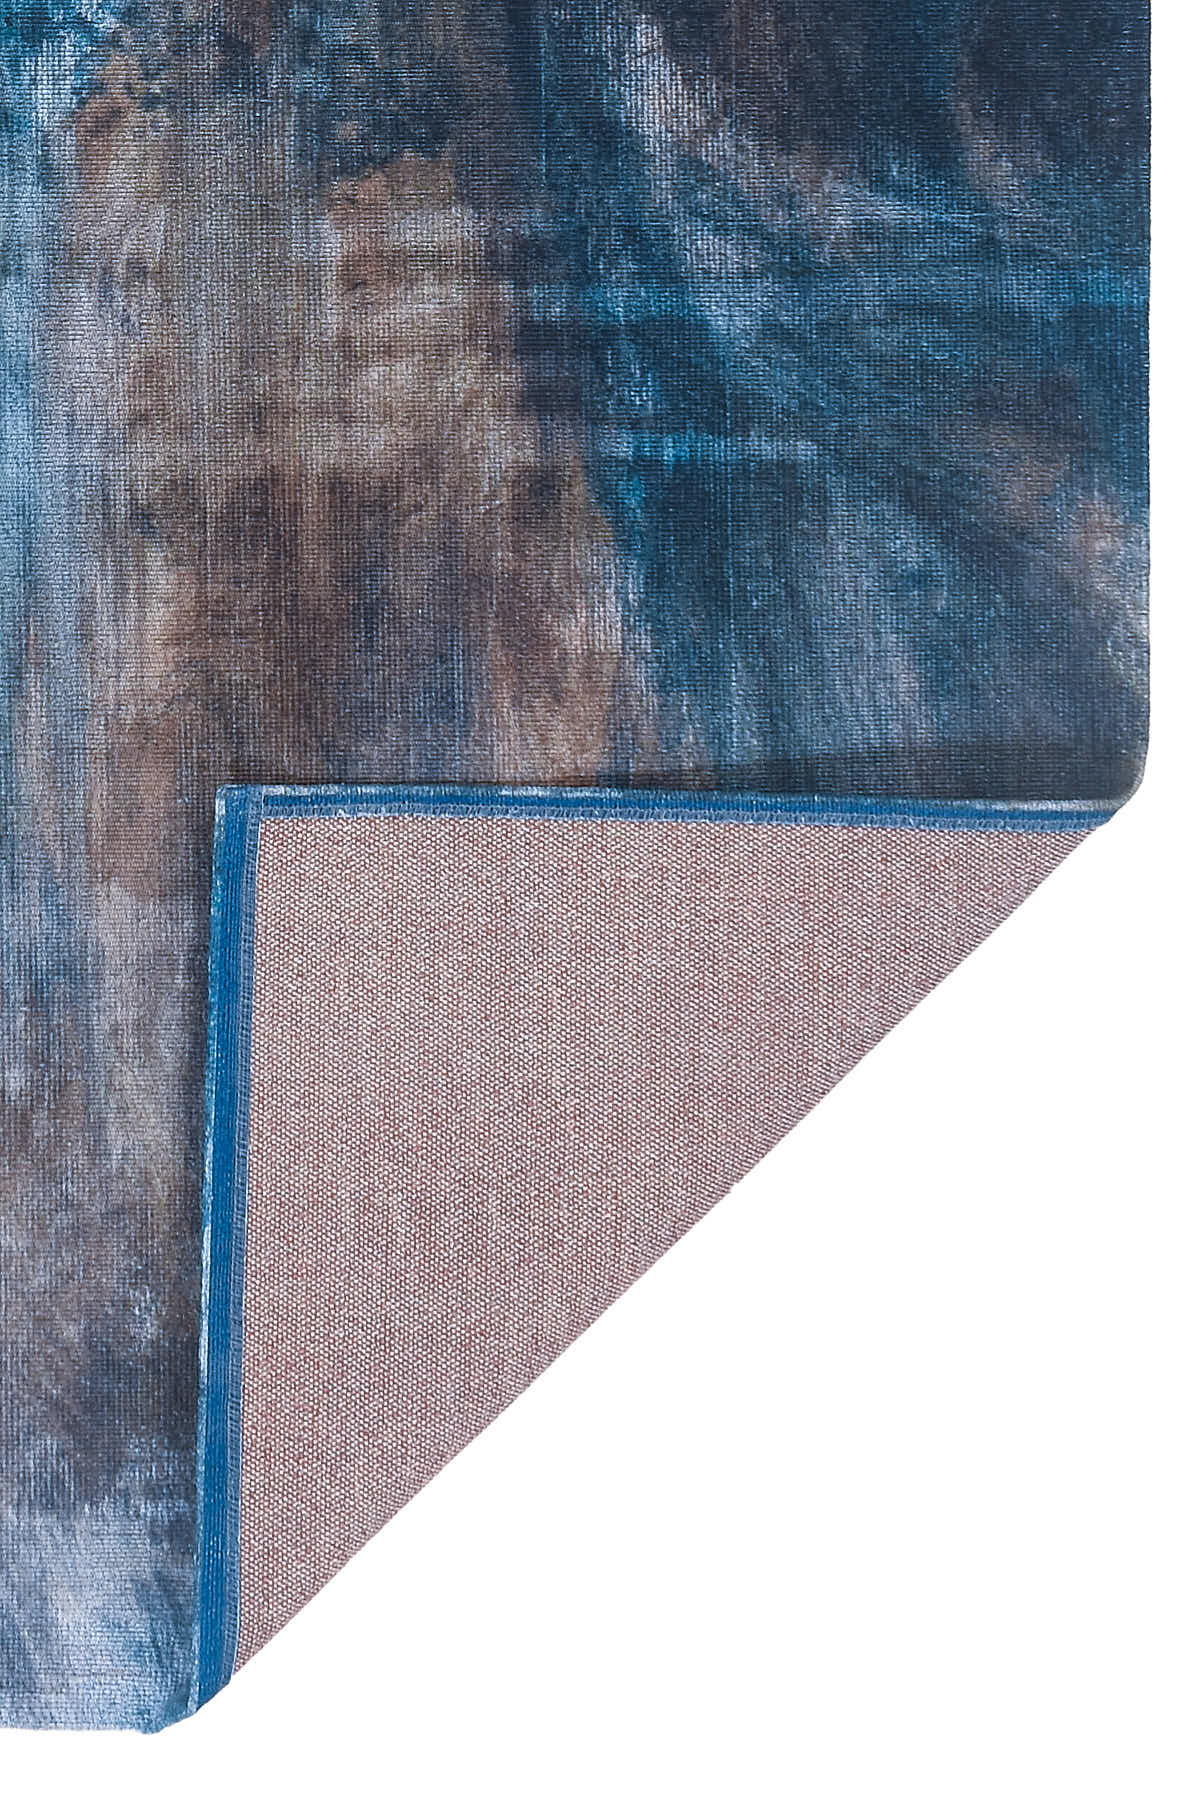 שטיח מרנטה BRUSH כחול